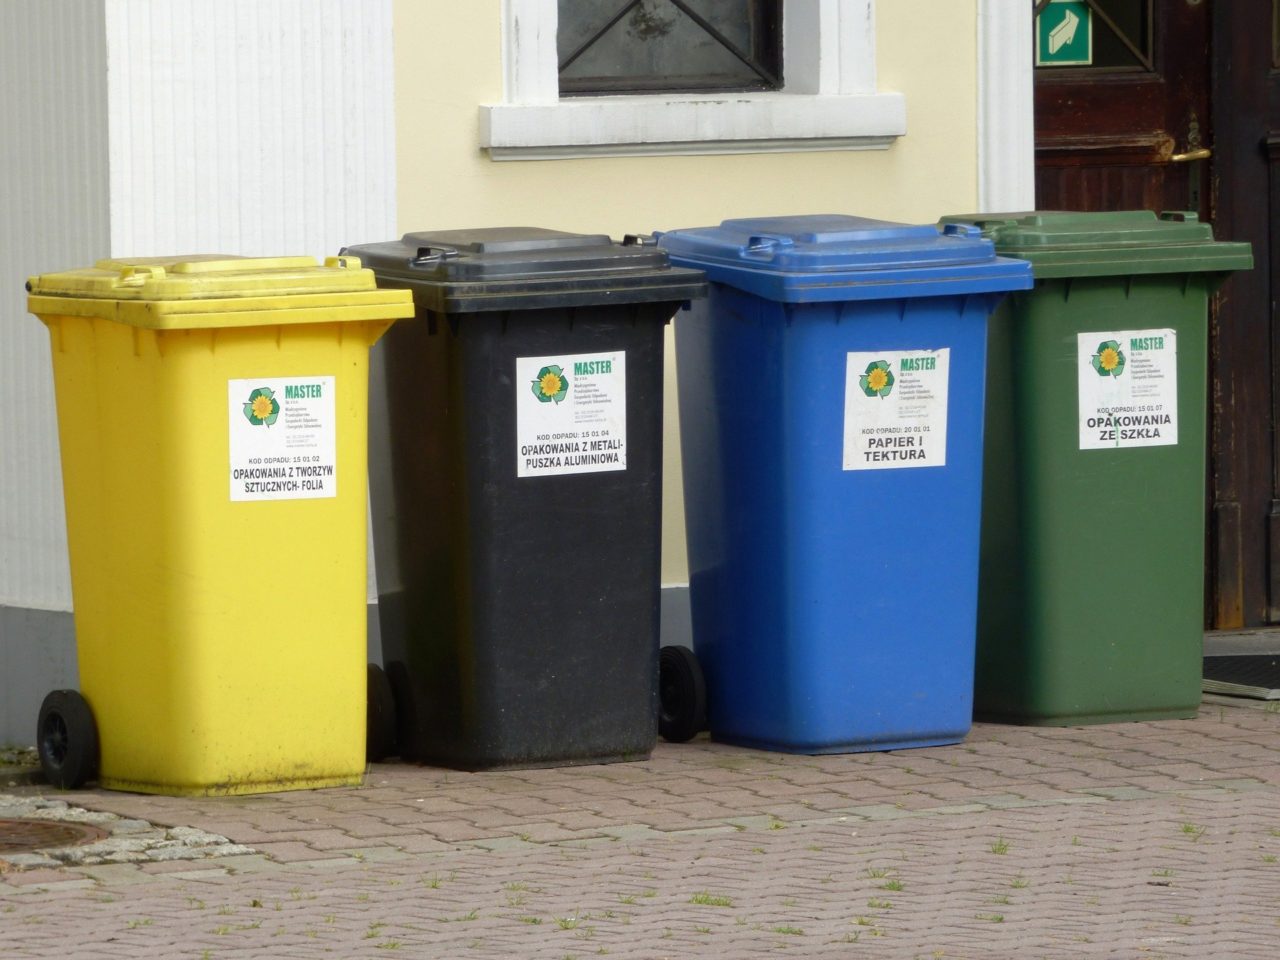 Dla mieszkańców - nowe harmonogramy wywozu odpadów komunalnych - od 1. maja do 31. grudnia